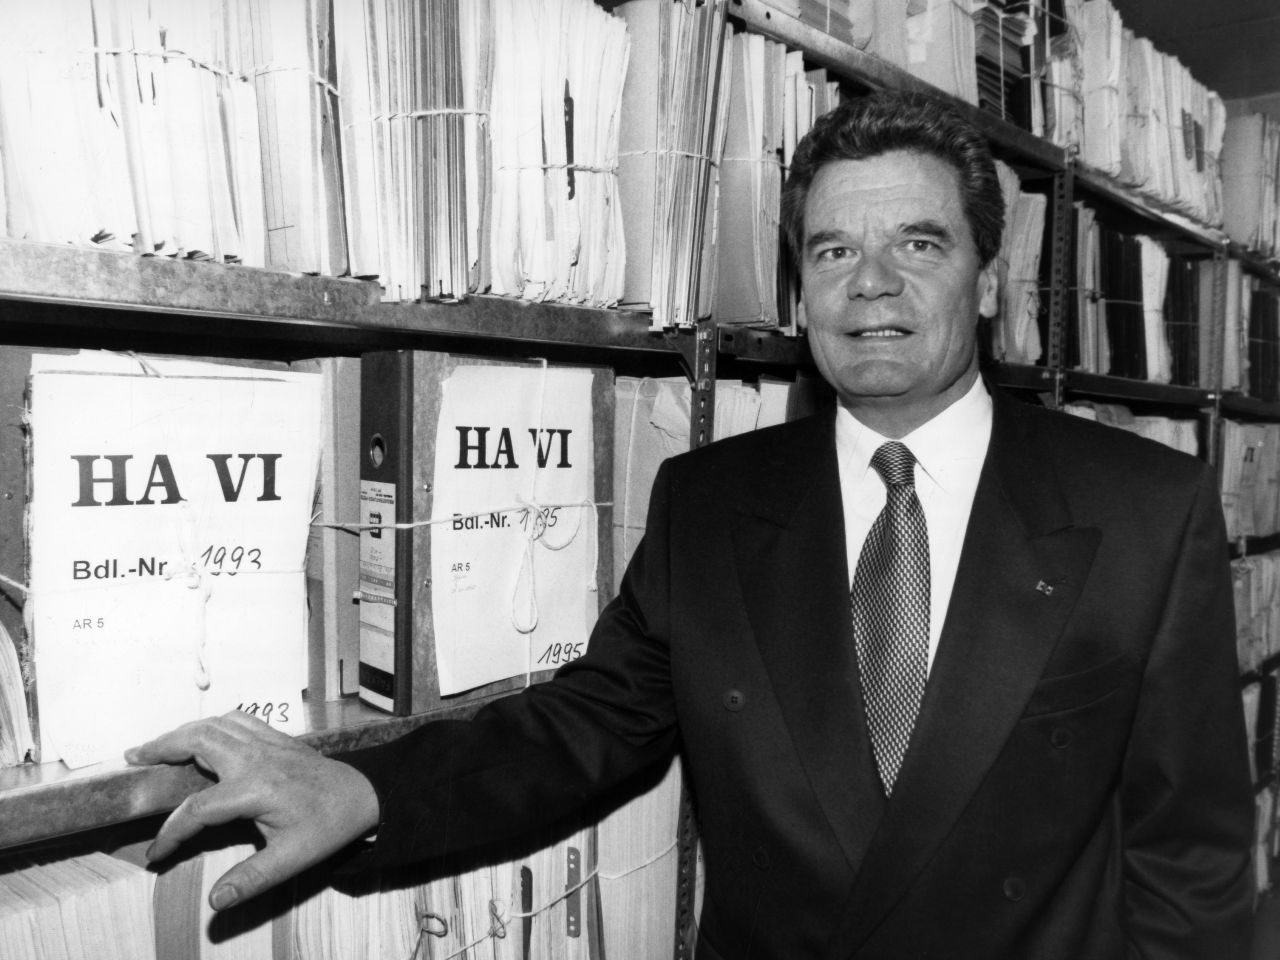 schwarz-weiß Fotografie, Joachim Guack steht vor einem Archivregal, das übervoll it Akten ist. Auf zwei Aktendeckeln ist zu lesen: HA VI. Gauck fast mit der einen Hand ans Regal und schaut freundlich aber unsicher mit geöffnetem Mund in die Kamera.